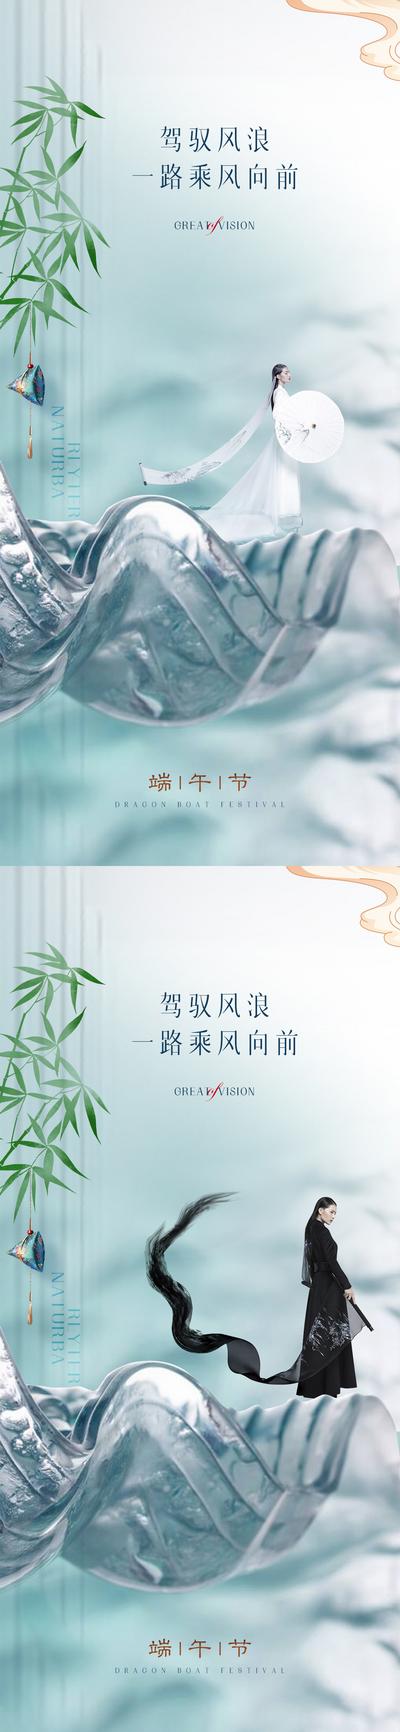 【南门网】广告 海报 节气 端午 医美 山水 中式 竹叶 荷包